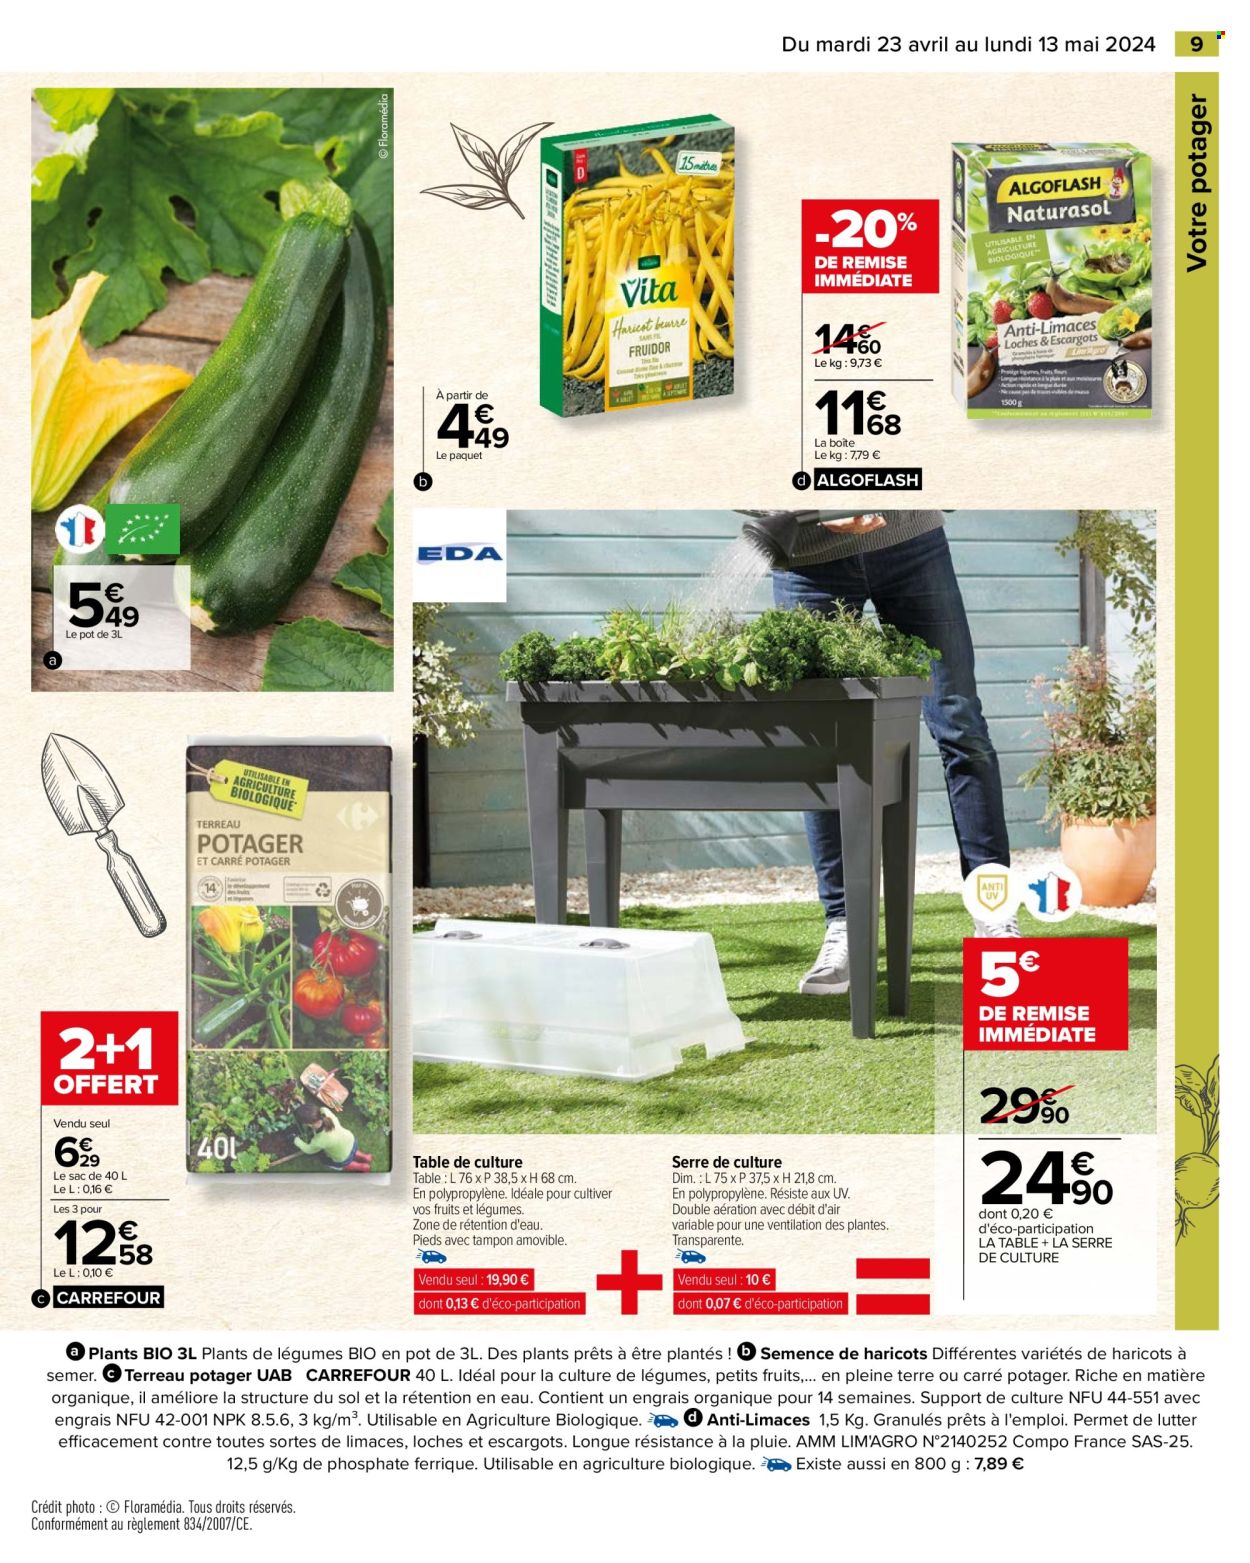 thumbnail - Catalogue Carrefour Hypermarchés - 23/04/2024 - 13/05/2024 - Produits soldés - Algoflash, antilimaces, table, terreau. Page 11.